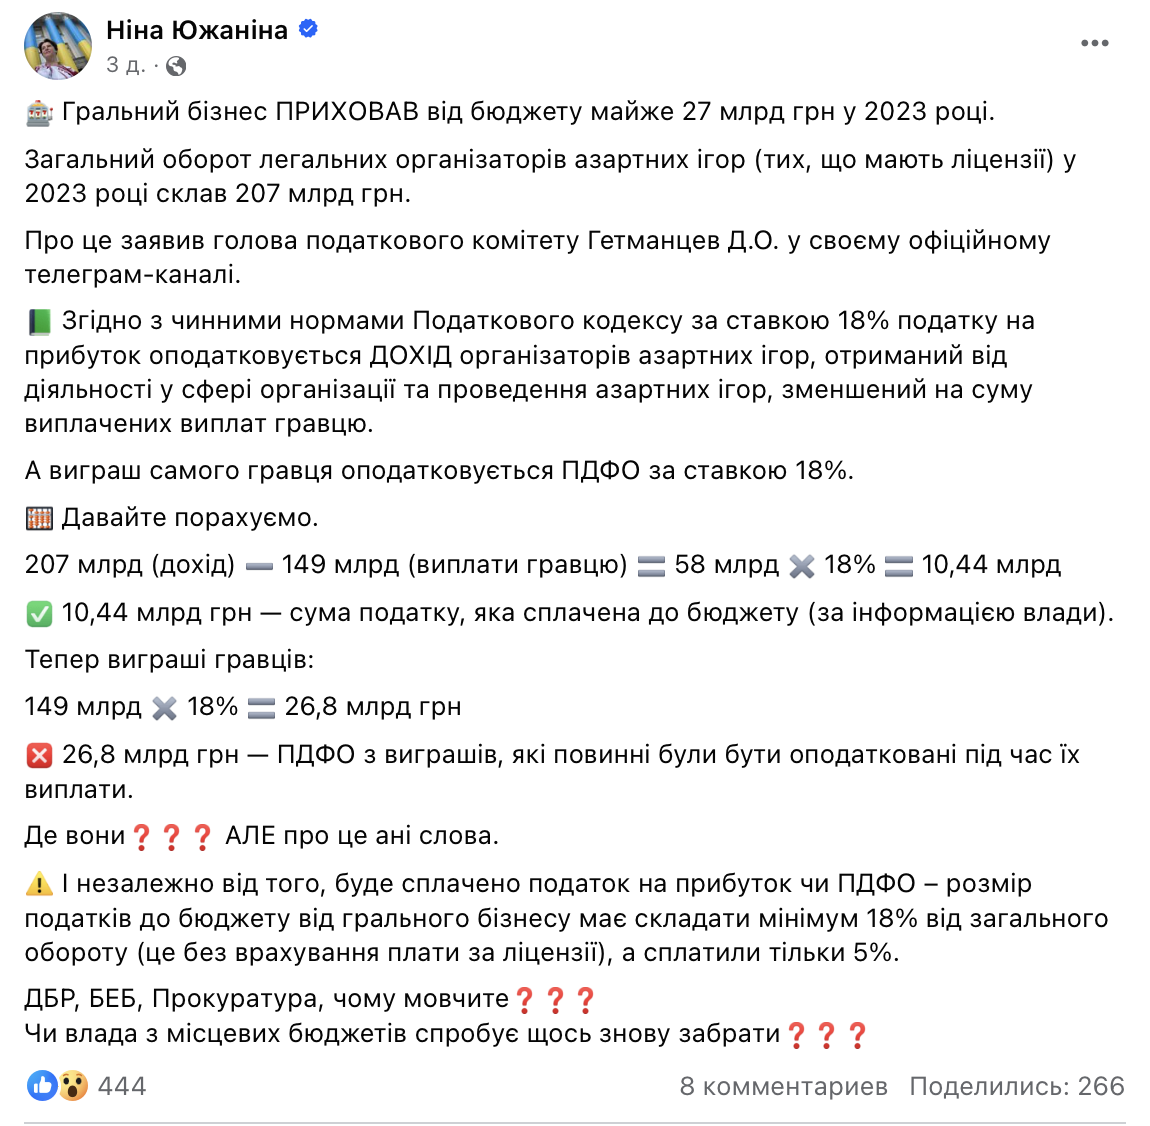 Депутат ВР подсчитала, что игорный бизнес в 2023 году недоплатил 27 млрд грн налогов